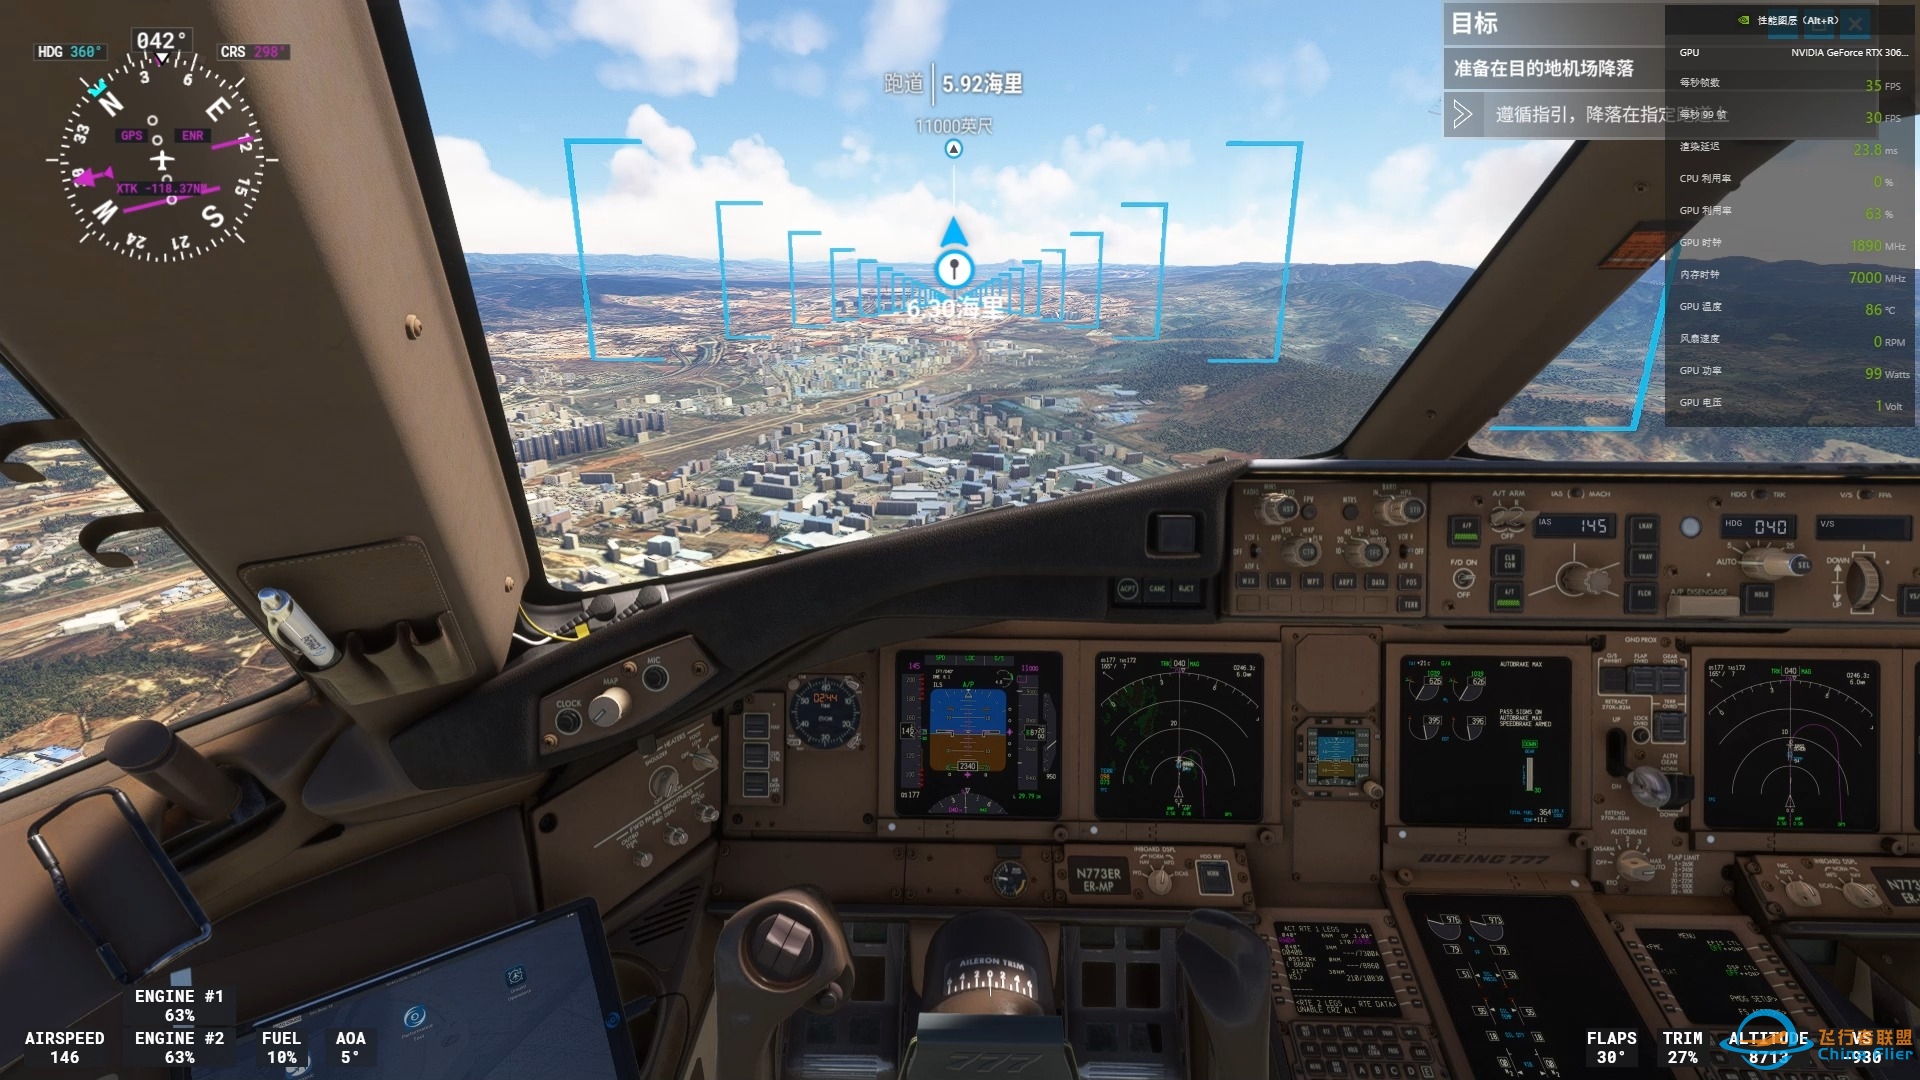 MSFS微软模拟飞行2020 PMDG777 ZPPP 昆明机场降落-9176 